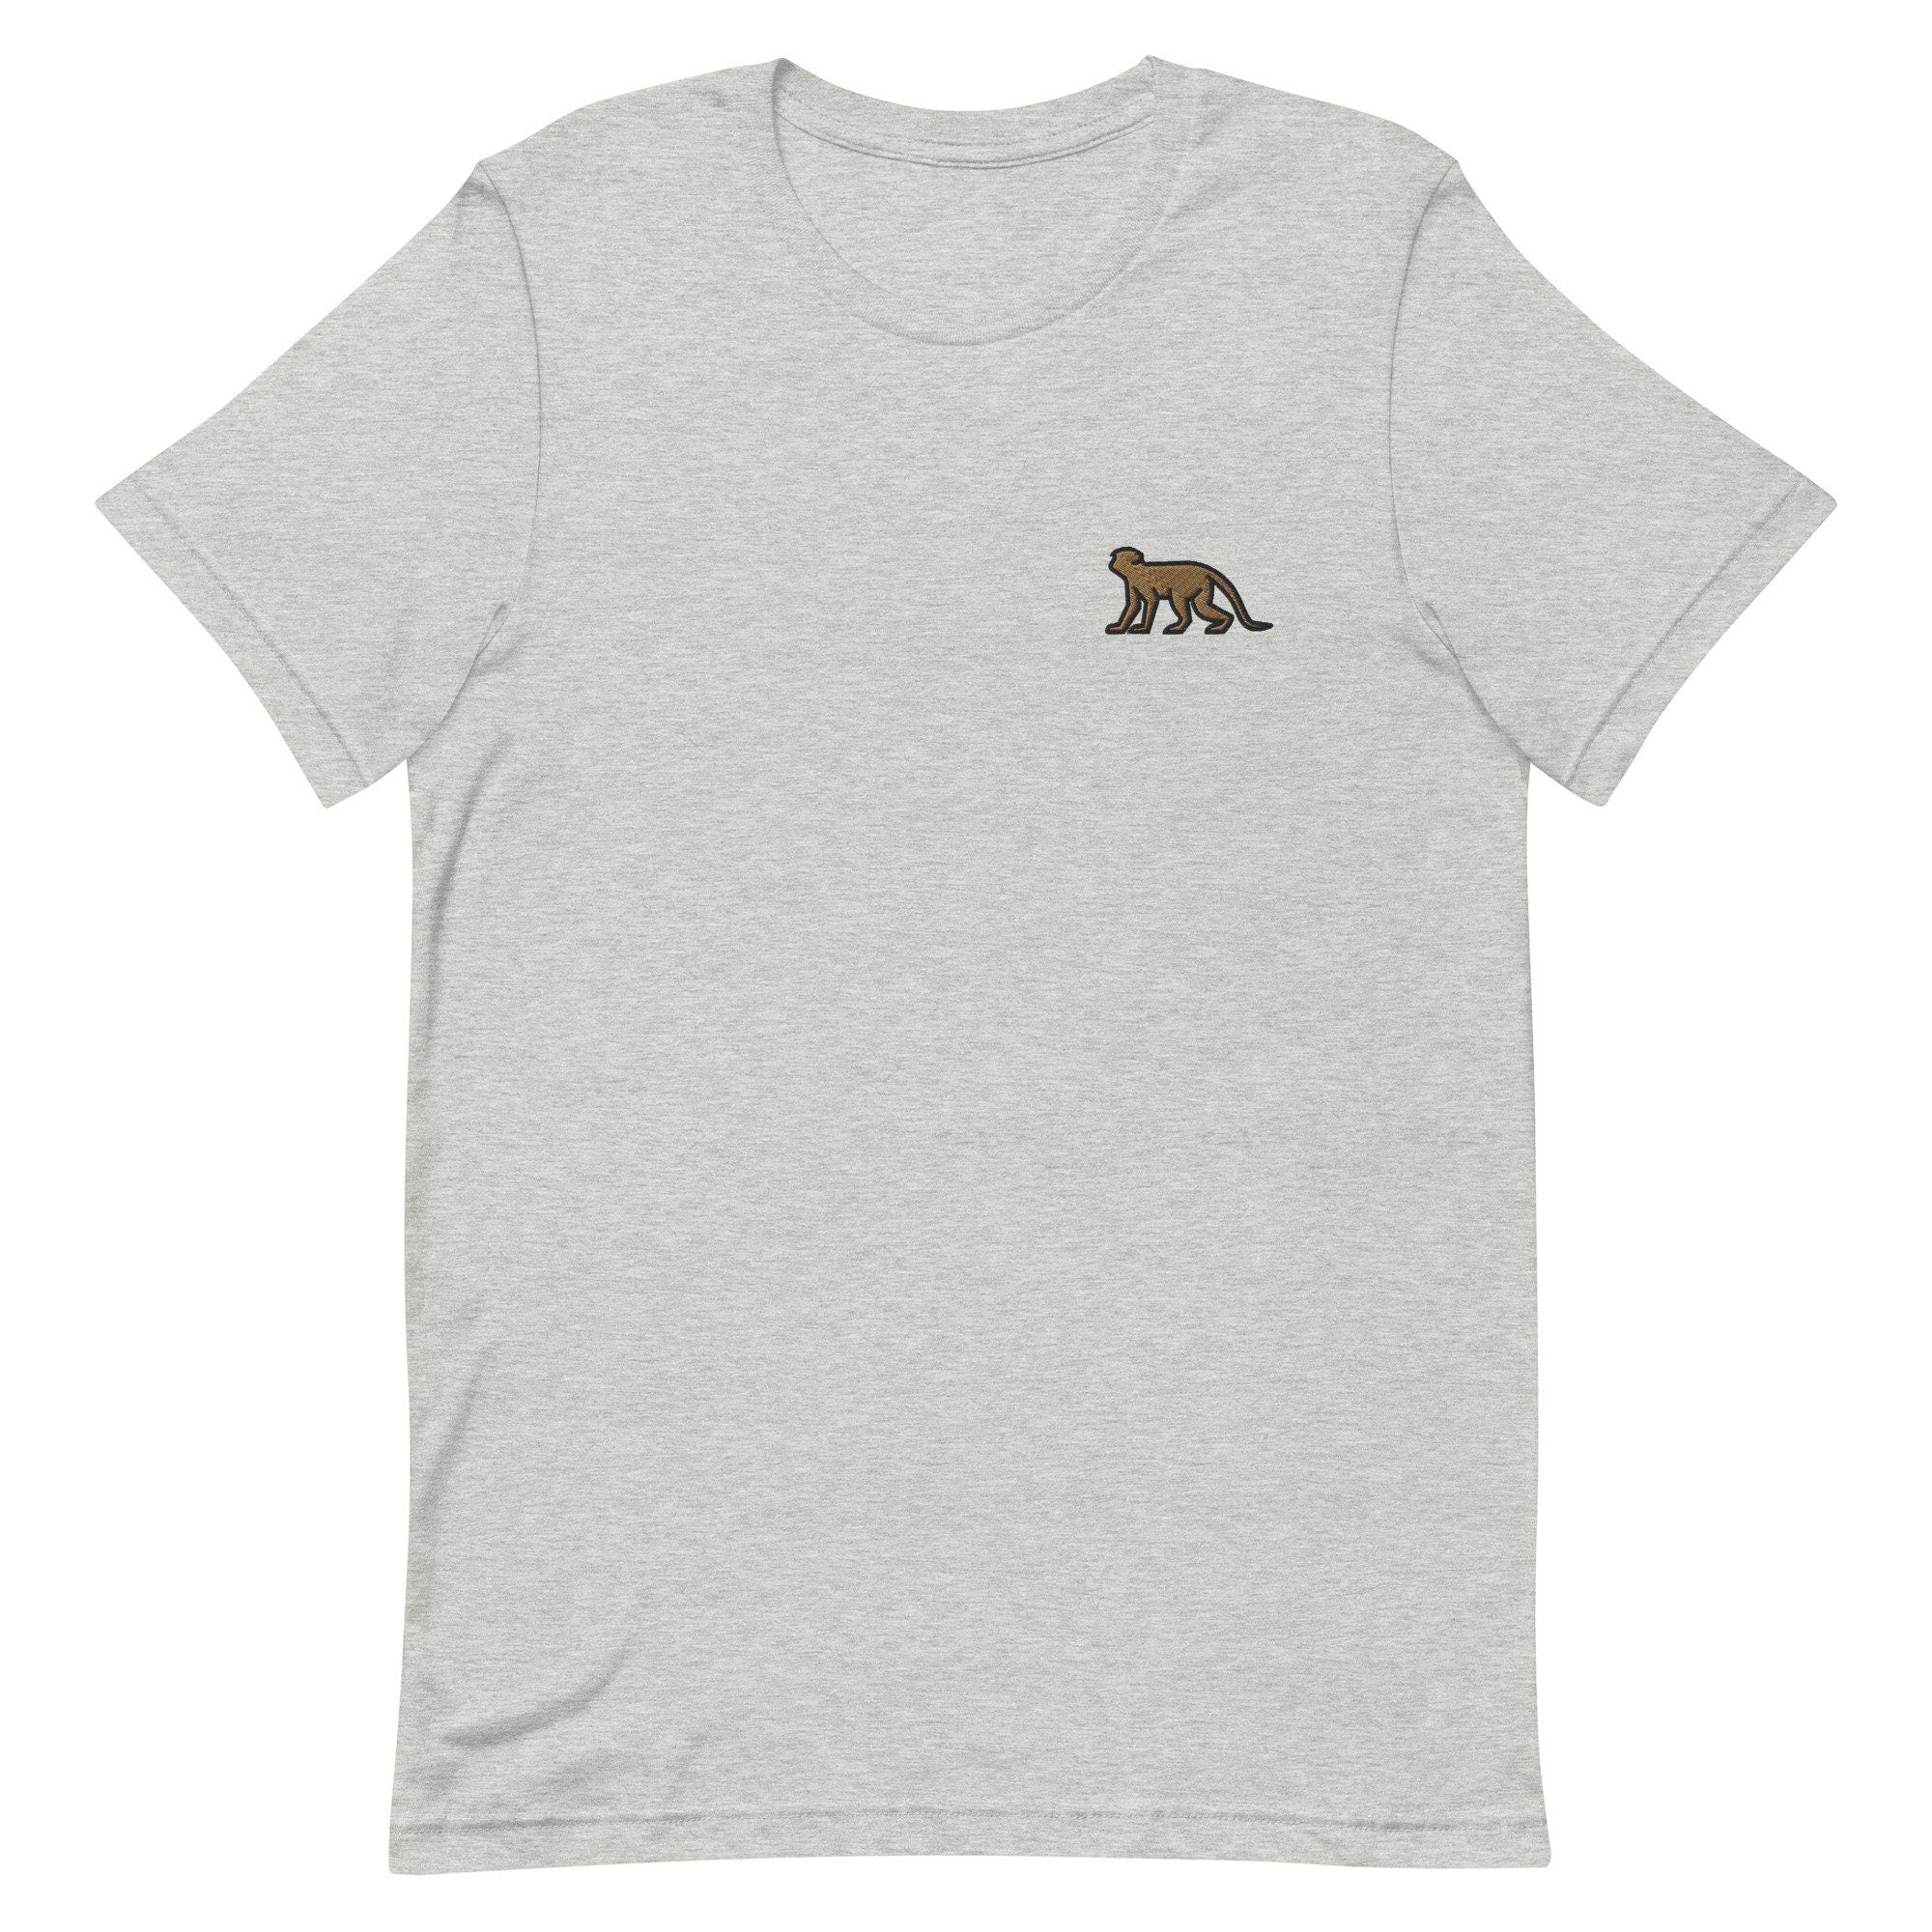 Monkey Premium Men's T-Shirt, Embroidered Men's T-Shirt Gift for Boyfriend, Men's Short Sleeve Shirt - Multiple Colors